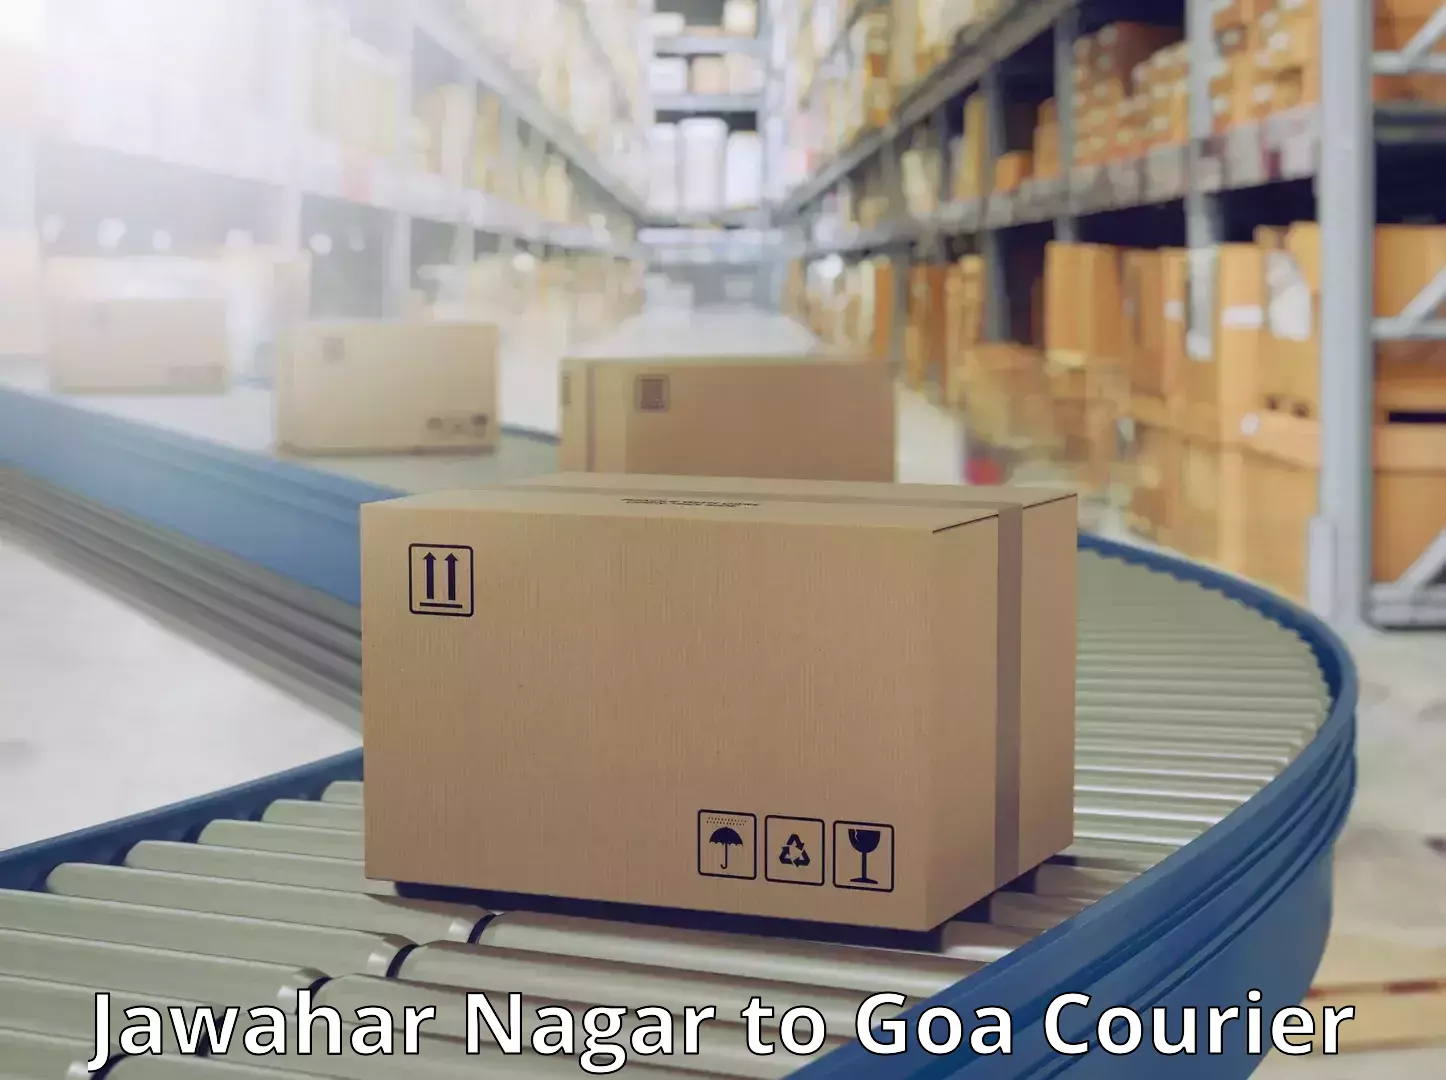 Logistics service provider Jawahar Nagar to South Goa